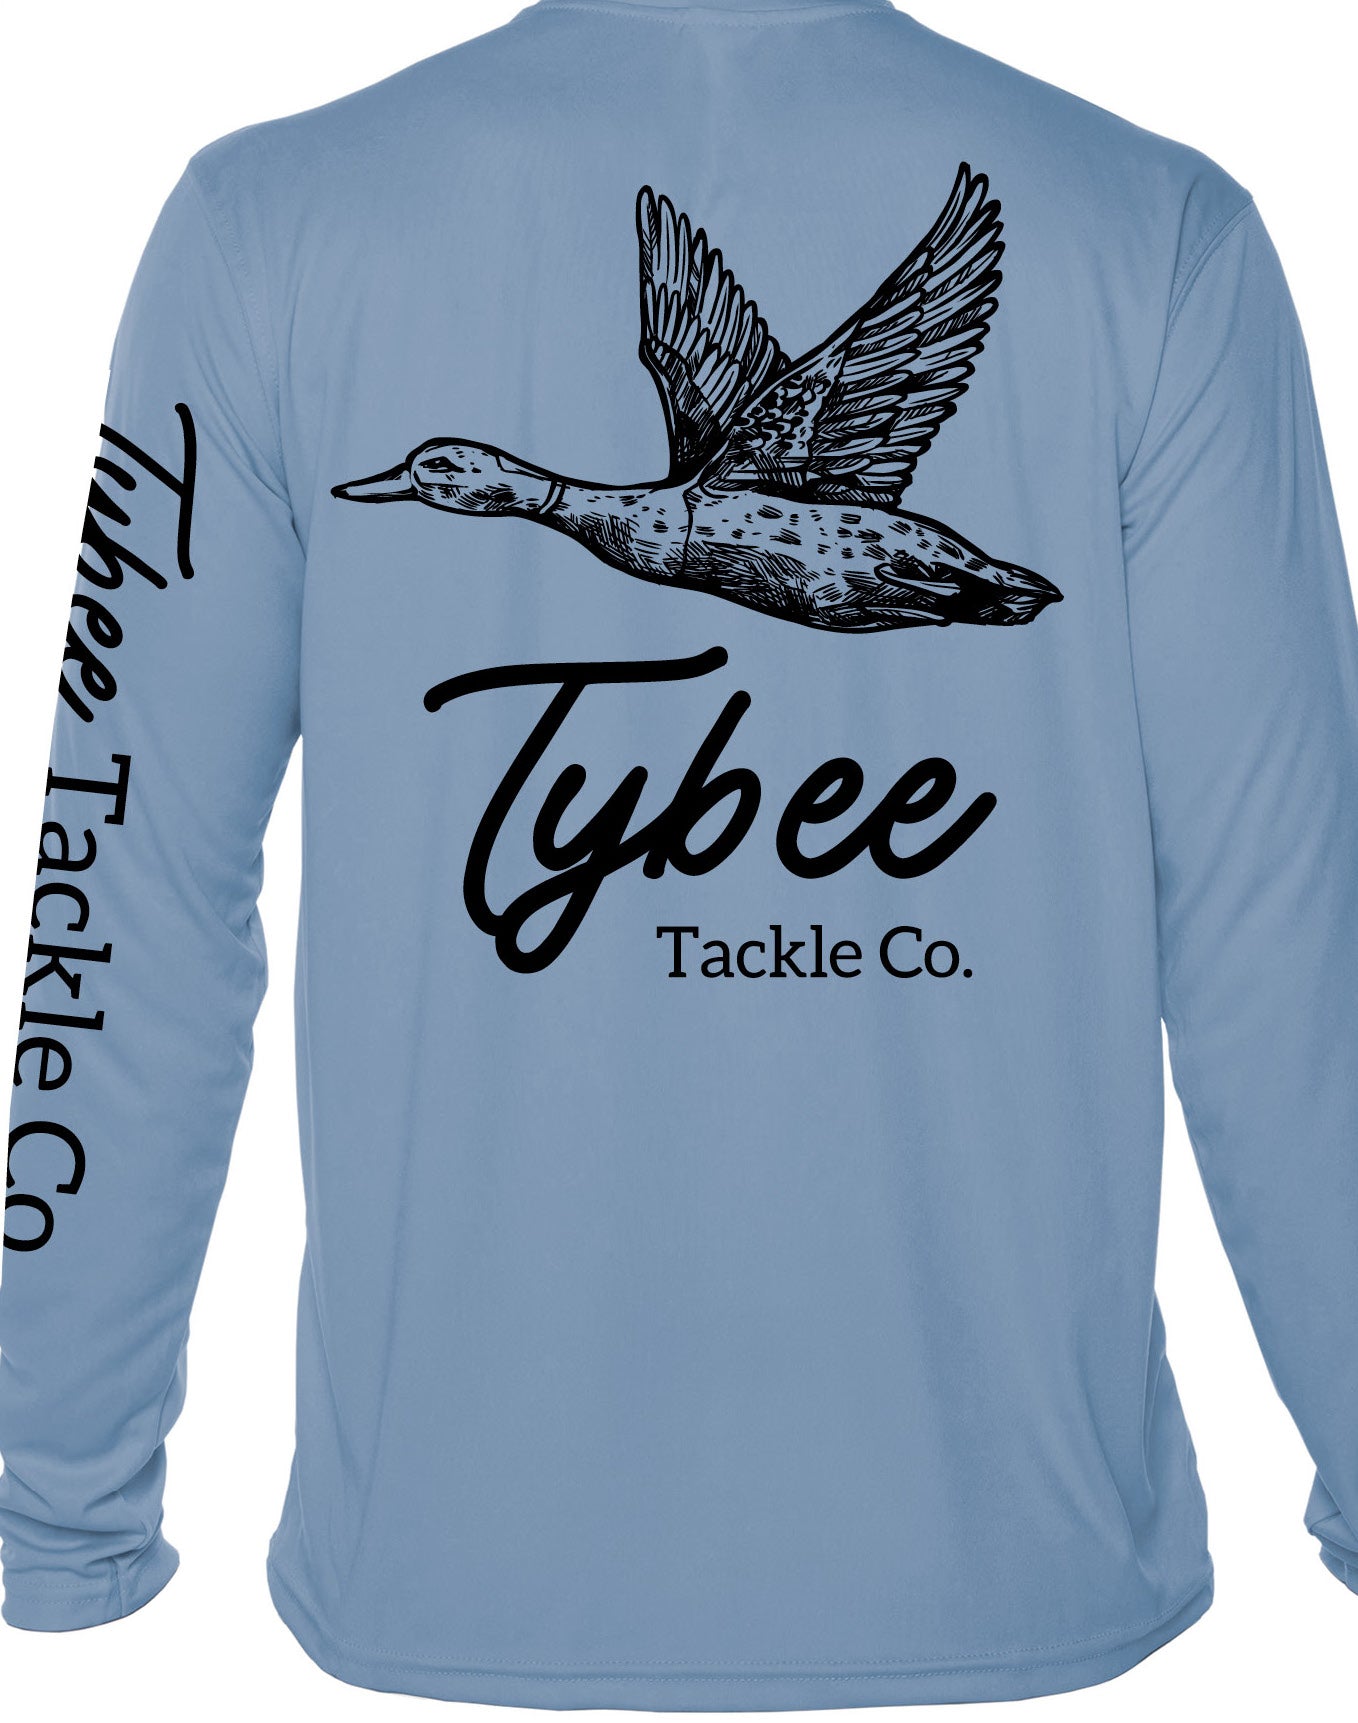 Men's Tybee Tackle Co- Tybee Duck